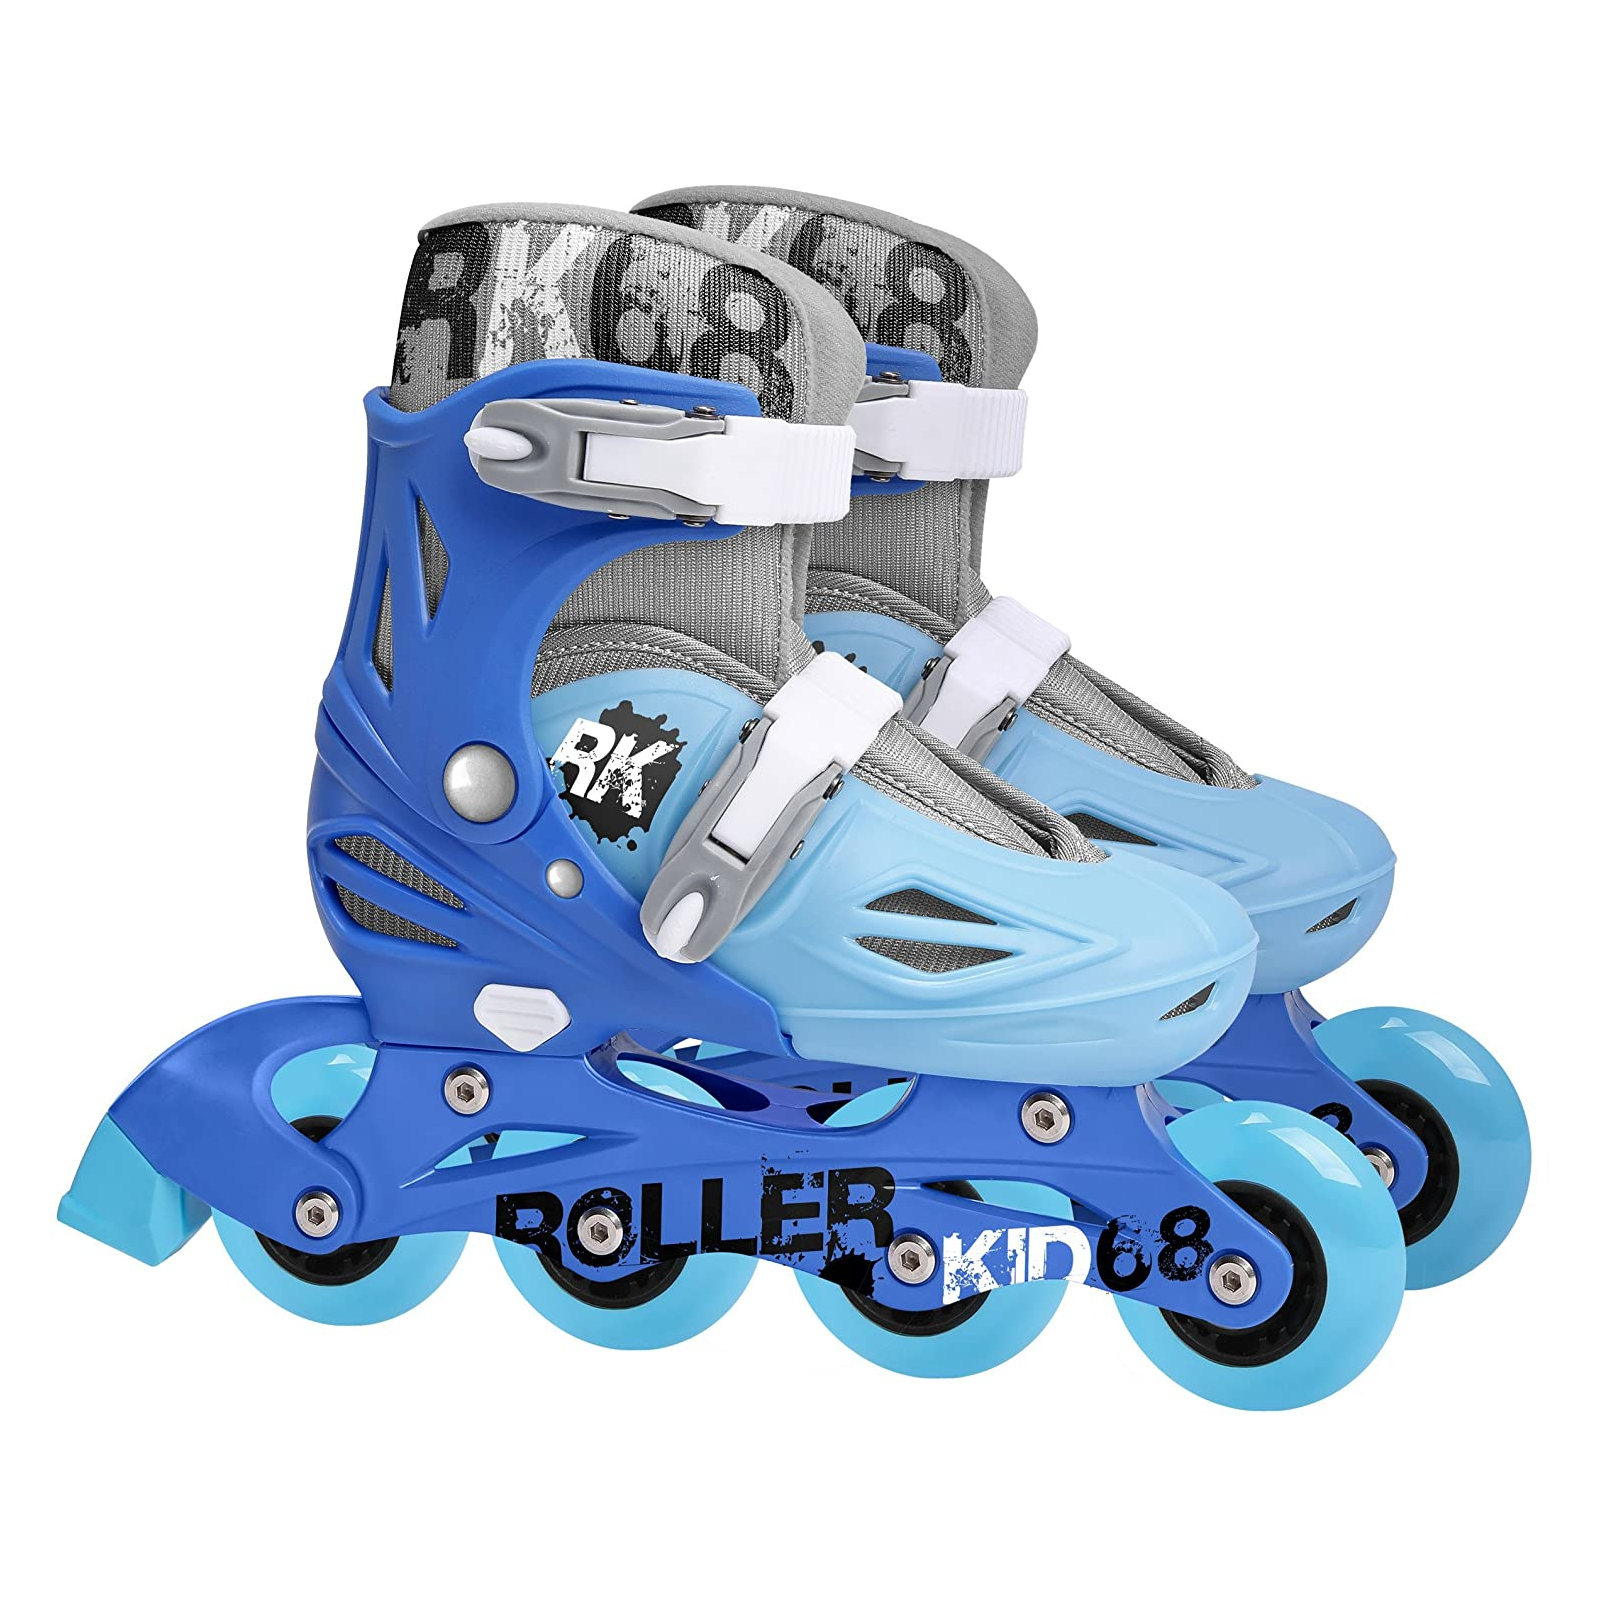 Patins Roller Skate 4 Rodas Ajustáveis Azul/branco Tam.30 a 33